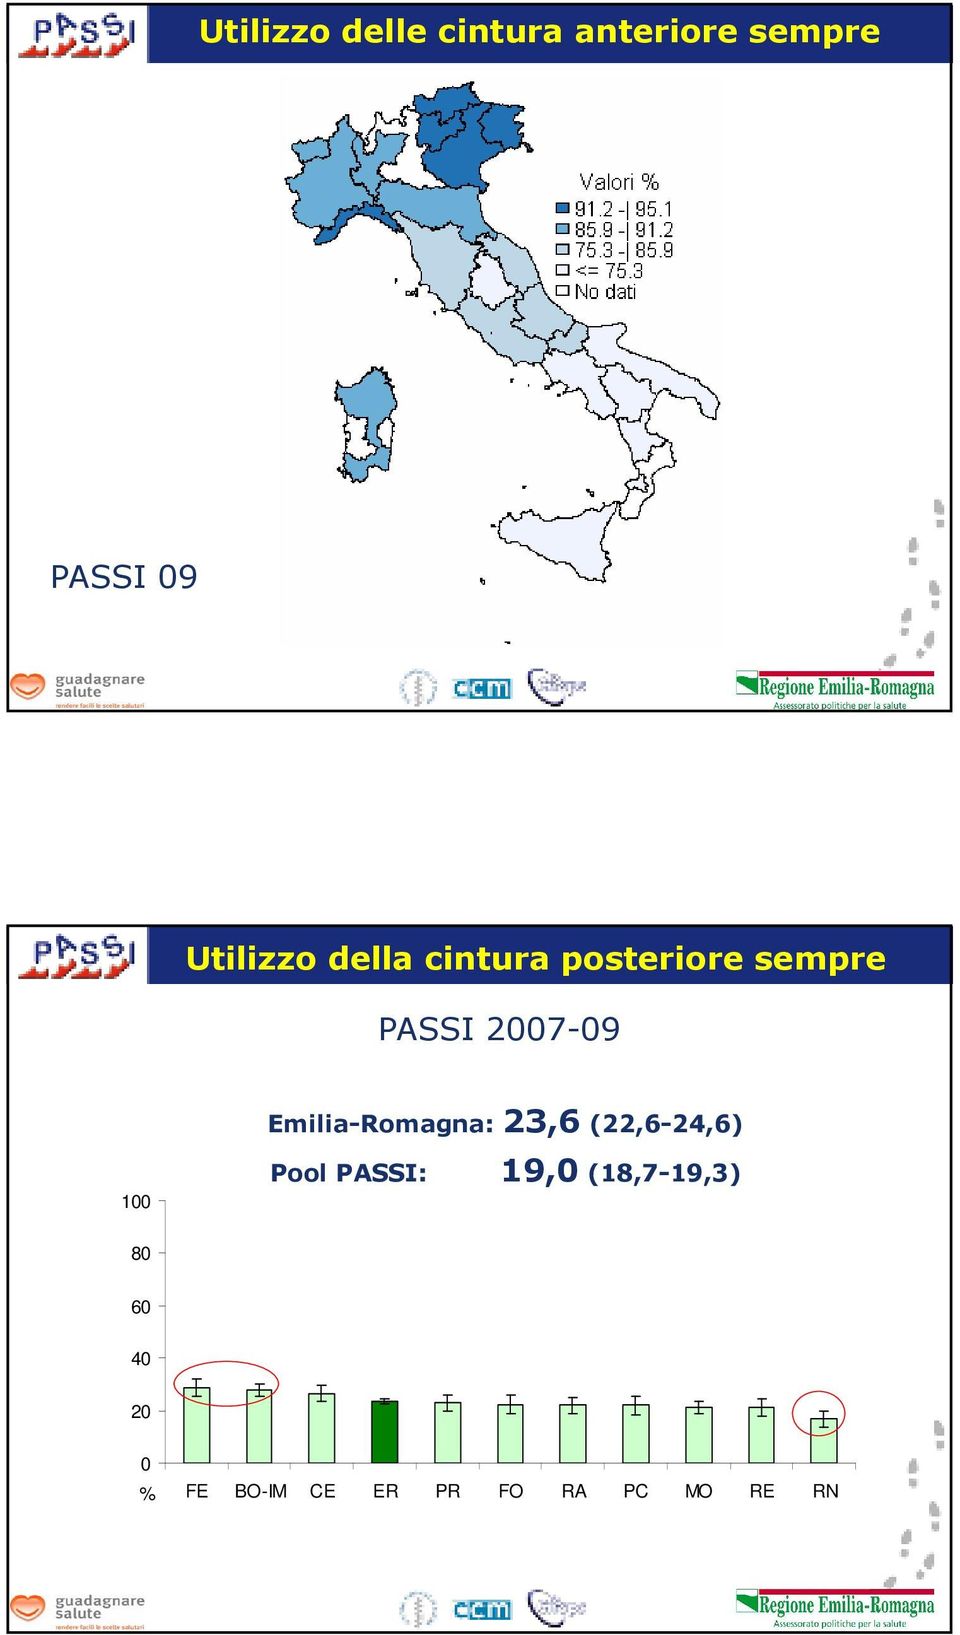 Emilia-Romagna: 23,6 (22,6-24,6) 1 Pool PASSI: